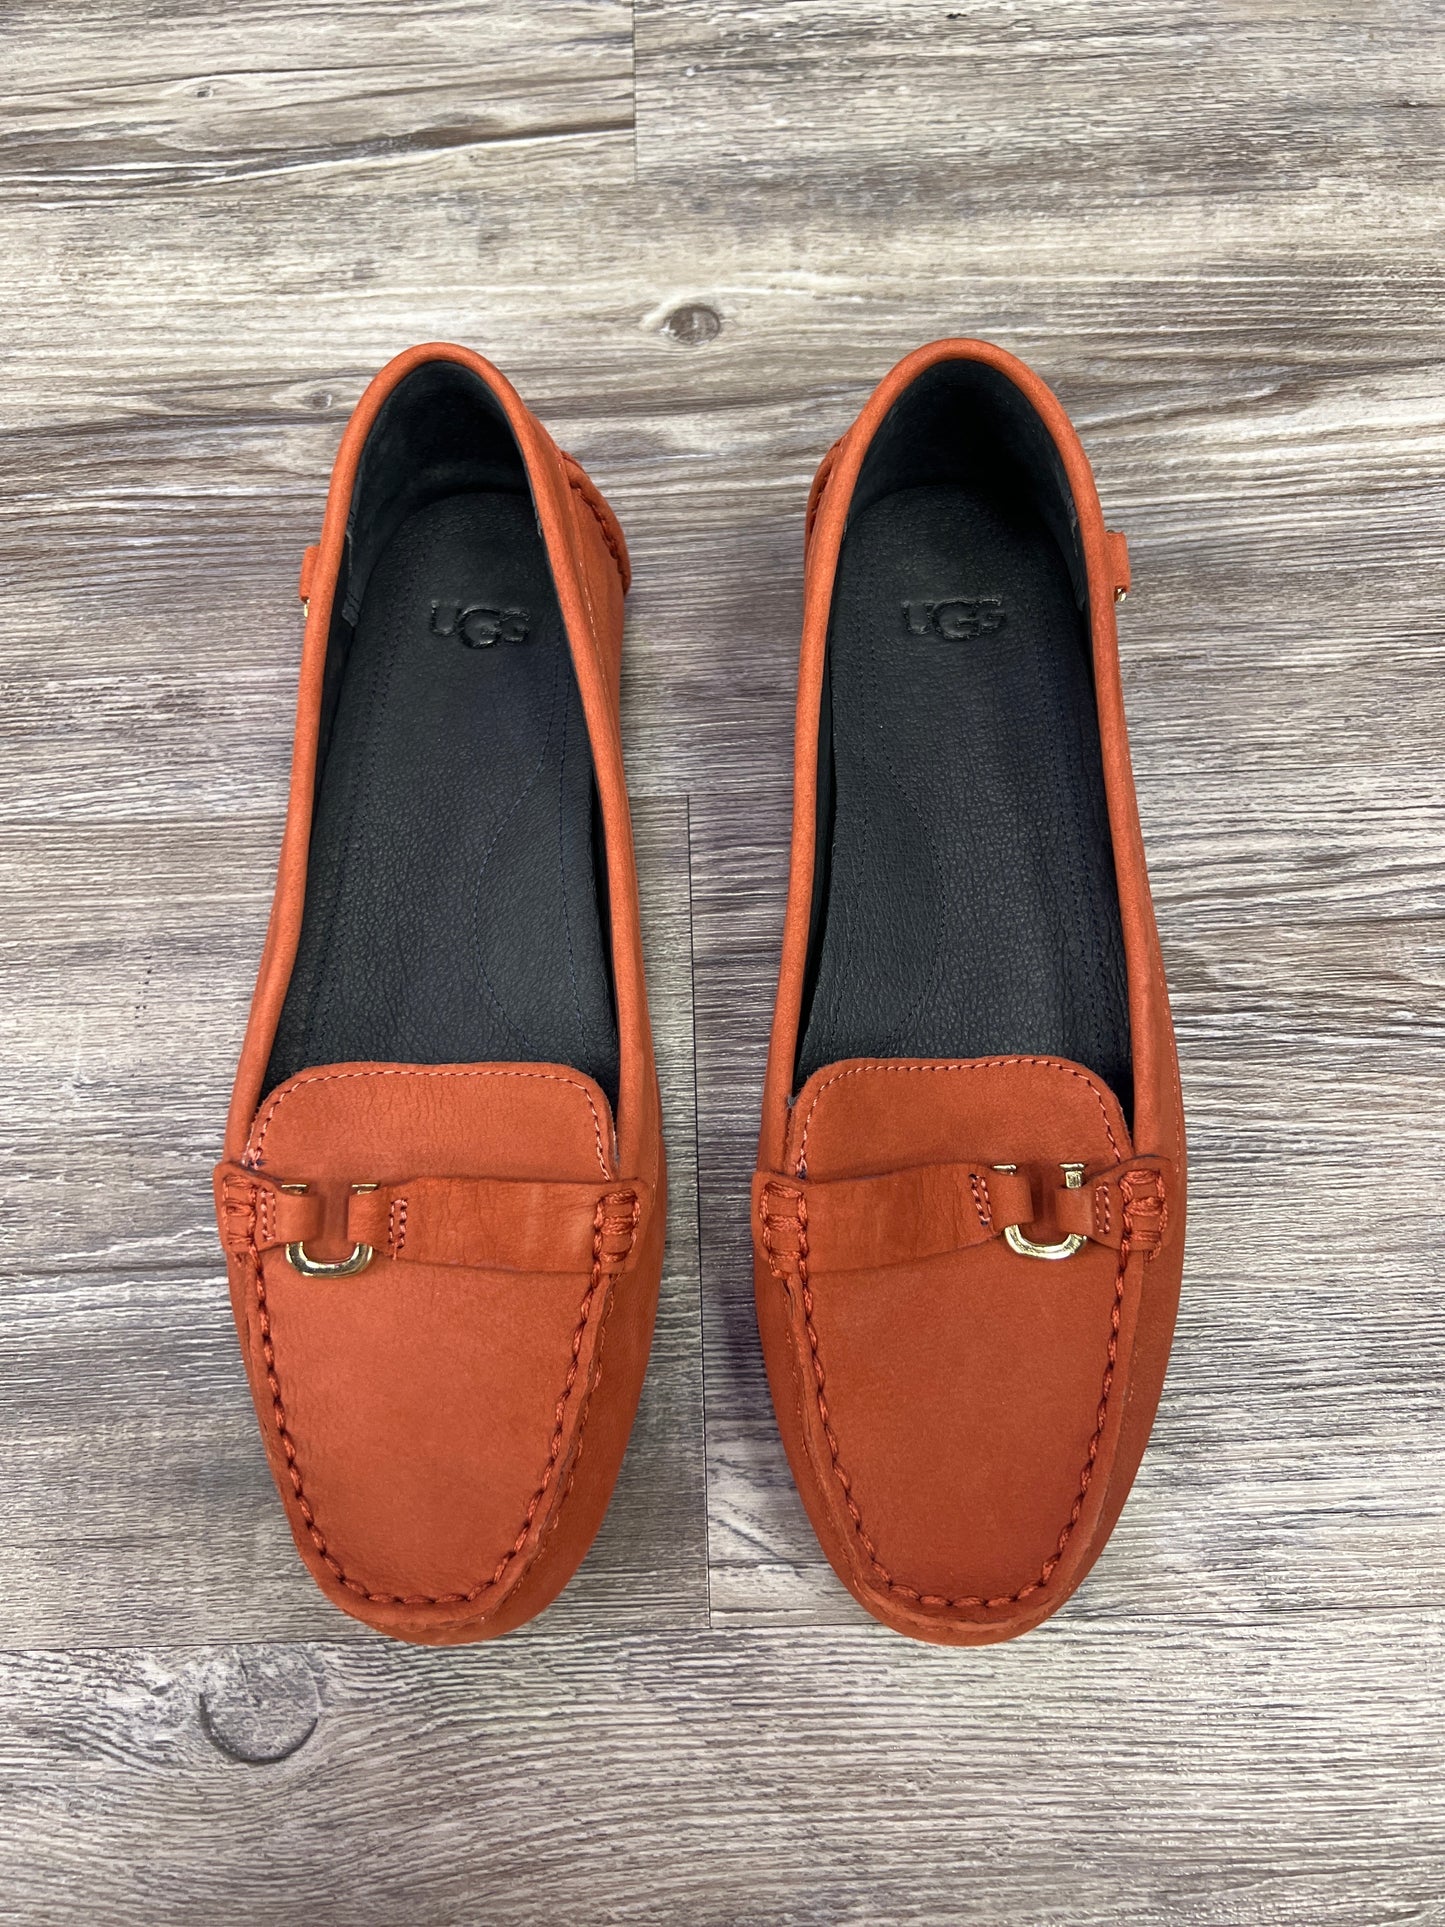 Orange Shoes Flats Ugg, Size 7